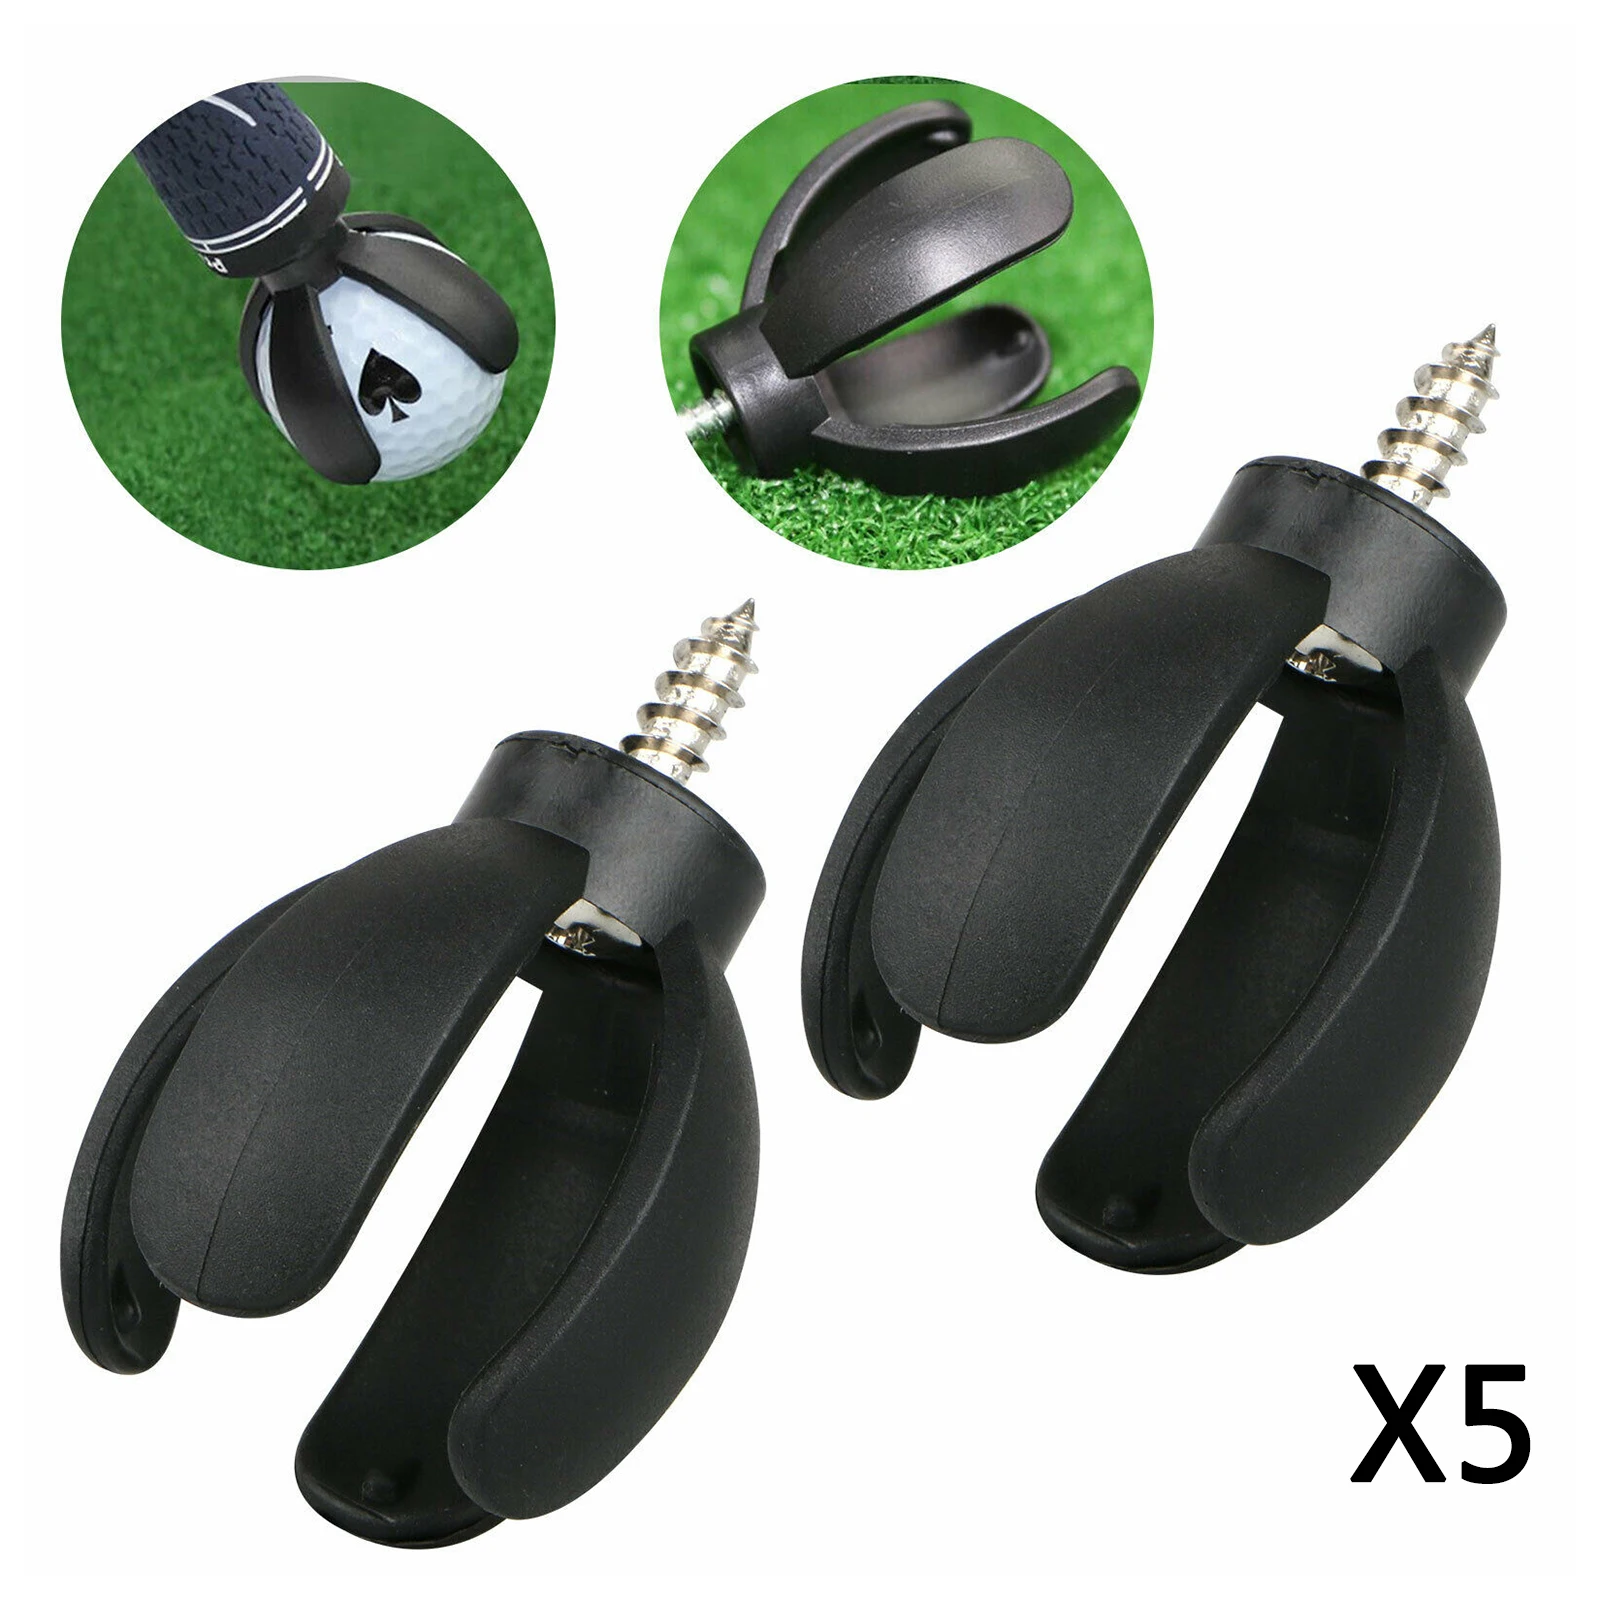 5pcs 4-Prong Golf Ball Pick Up Retriever Grabber Sucker Claw For Putter Grip,Sucker Tool Golf Accessory